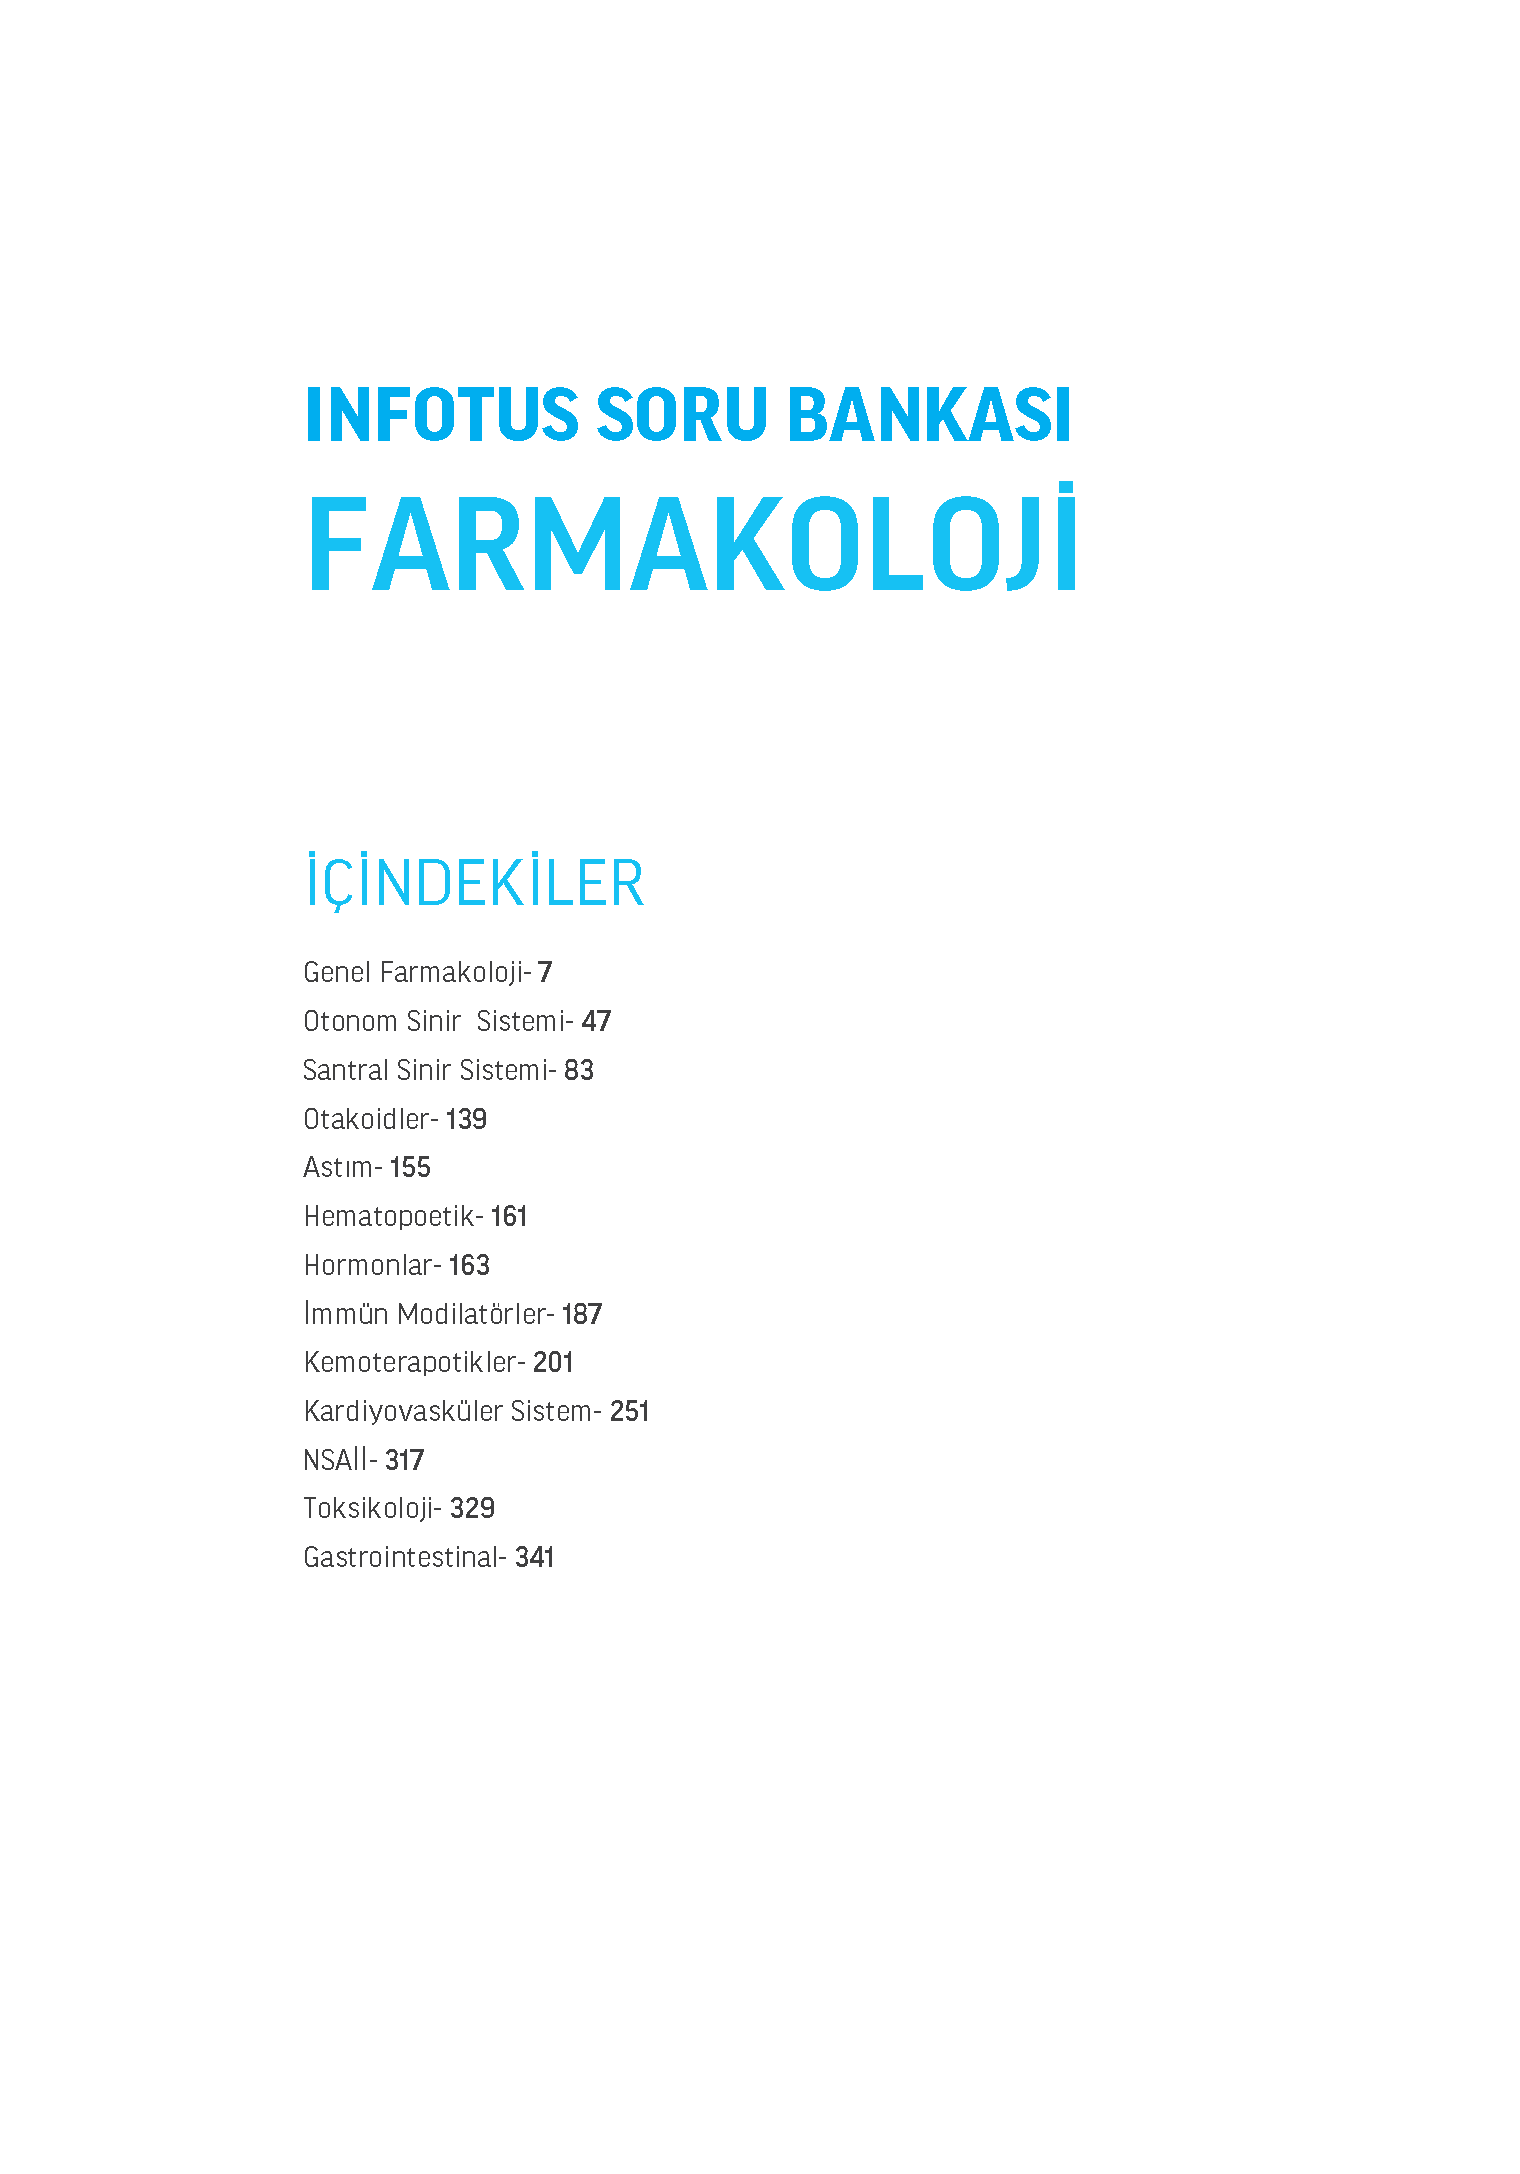 INFOTUS SORU BANKASI FARMAKOLOJI_Page_003